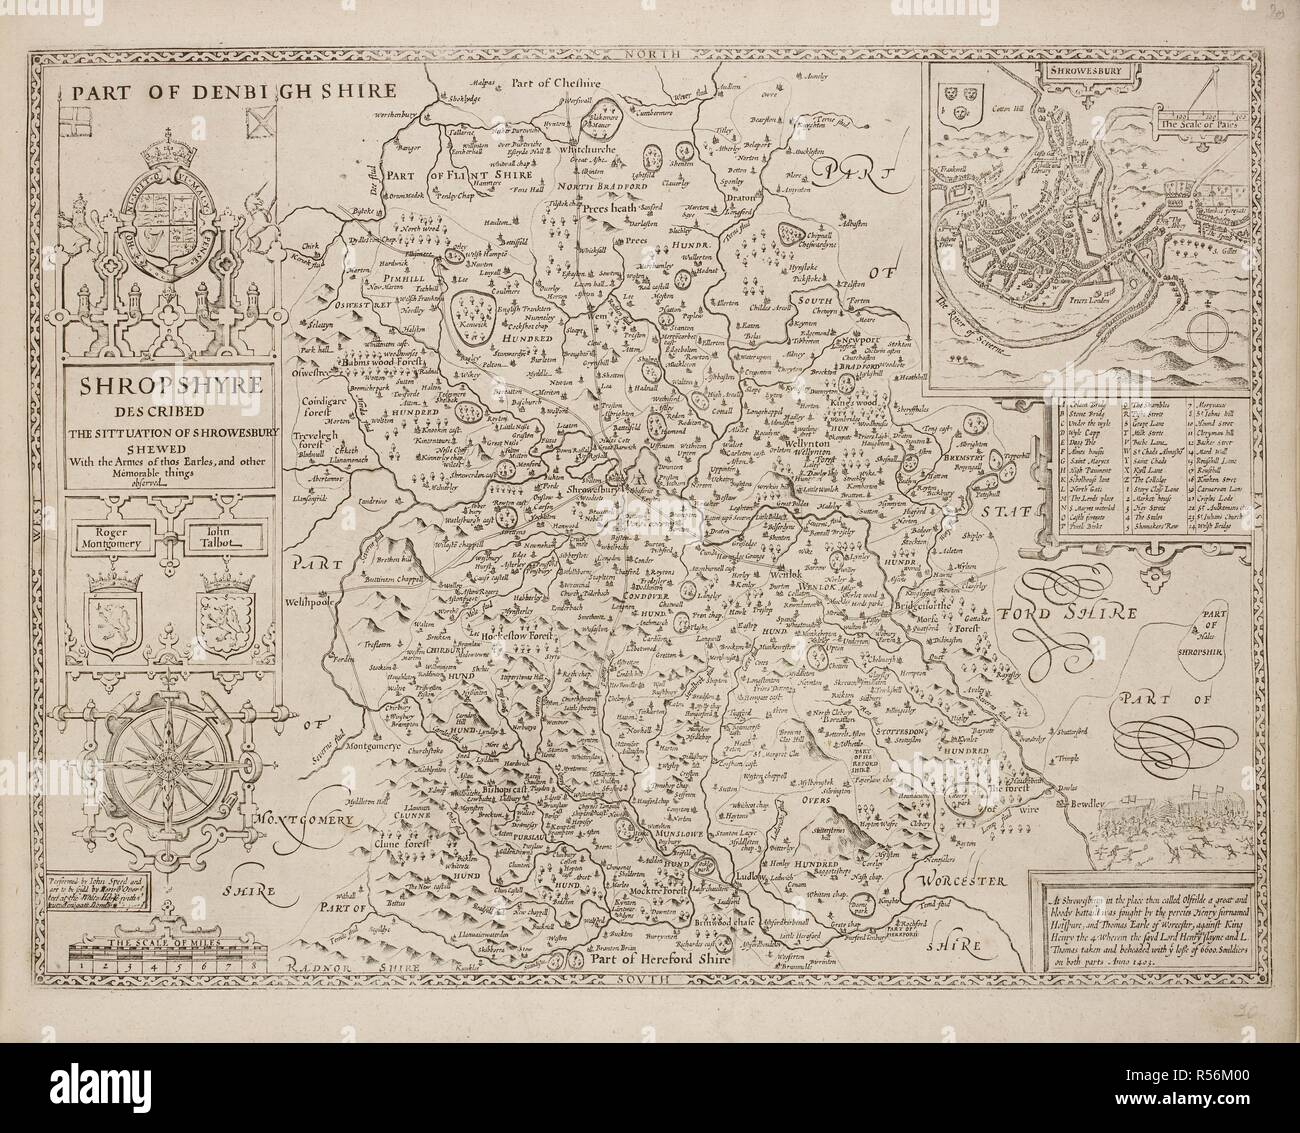 Un mapa de Shropshyre, o el condado de Shropshire. . Una colección de 37 mapas de los condados de Inglaterra. Londres. H. Overton, 1714. Una colección de 37 mapas de los condados de Inglaterra, siendo las reimpresiones, de J. Speedâ€™s mapas, por Henry Overton, junto con los de P. Stent Reimpreso por John Overton, y mapas de Derbyshire y Yorkshire grabado por S. Nicholls. Fuente: Maps.145.c.9 20. Idioma: Inglés. Foto de stock